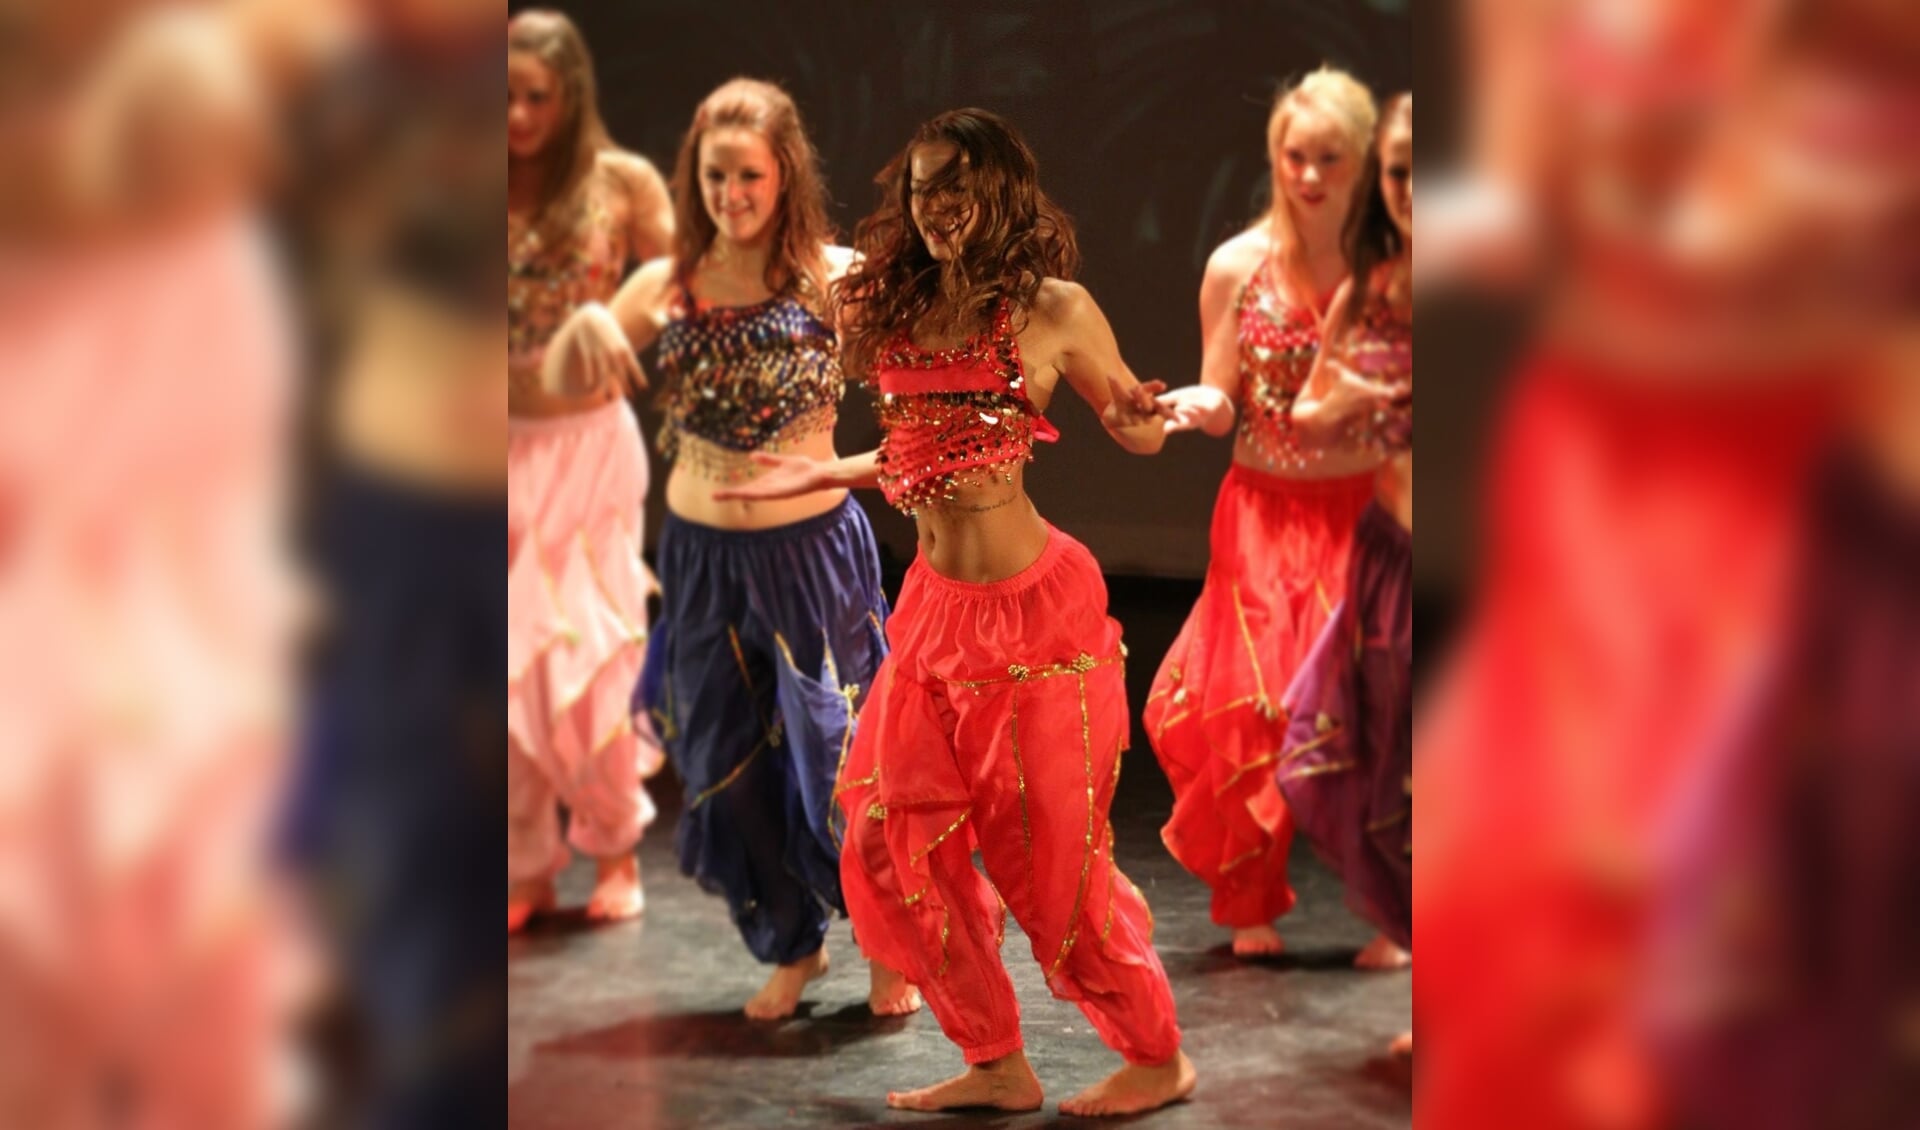 Dansers zetten zich met een wervelende show in voor KiKa. Foto: PR